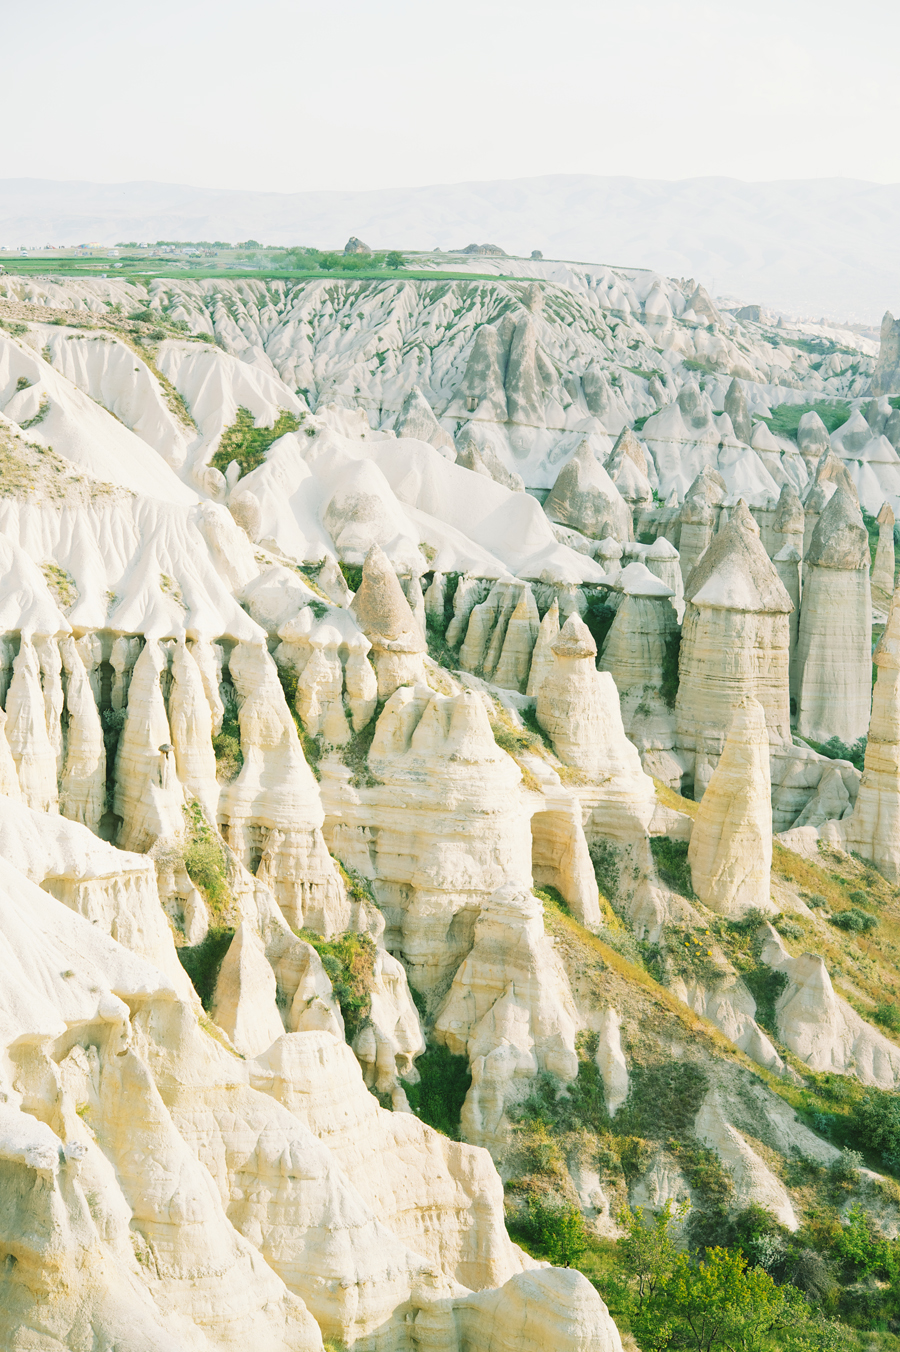 Fairy Chimneys in Cappadocia